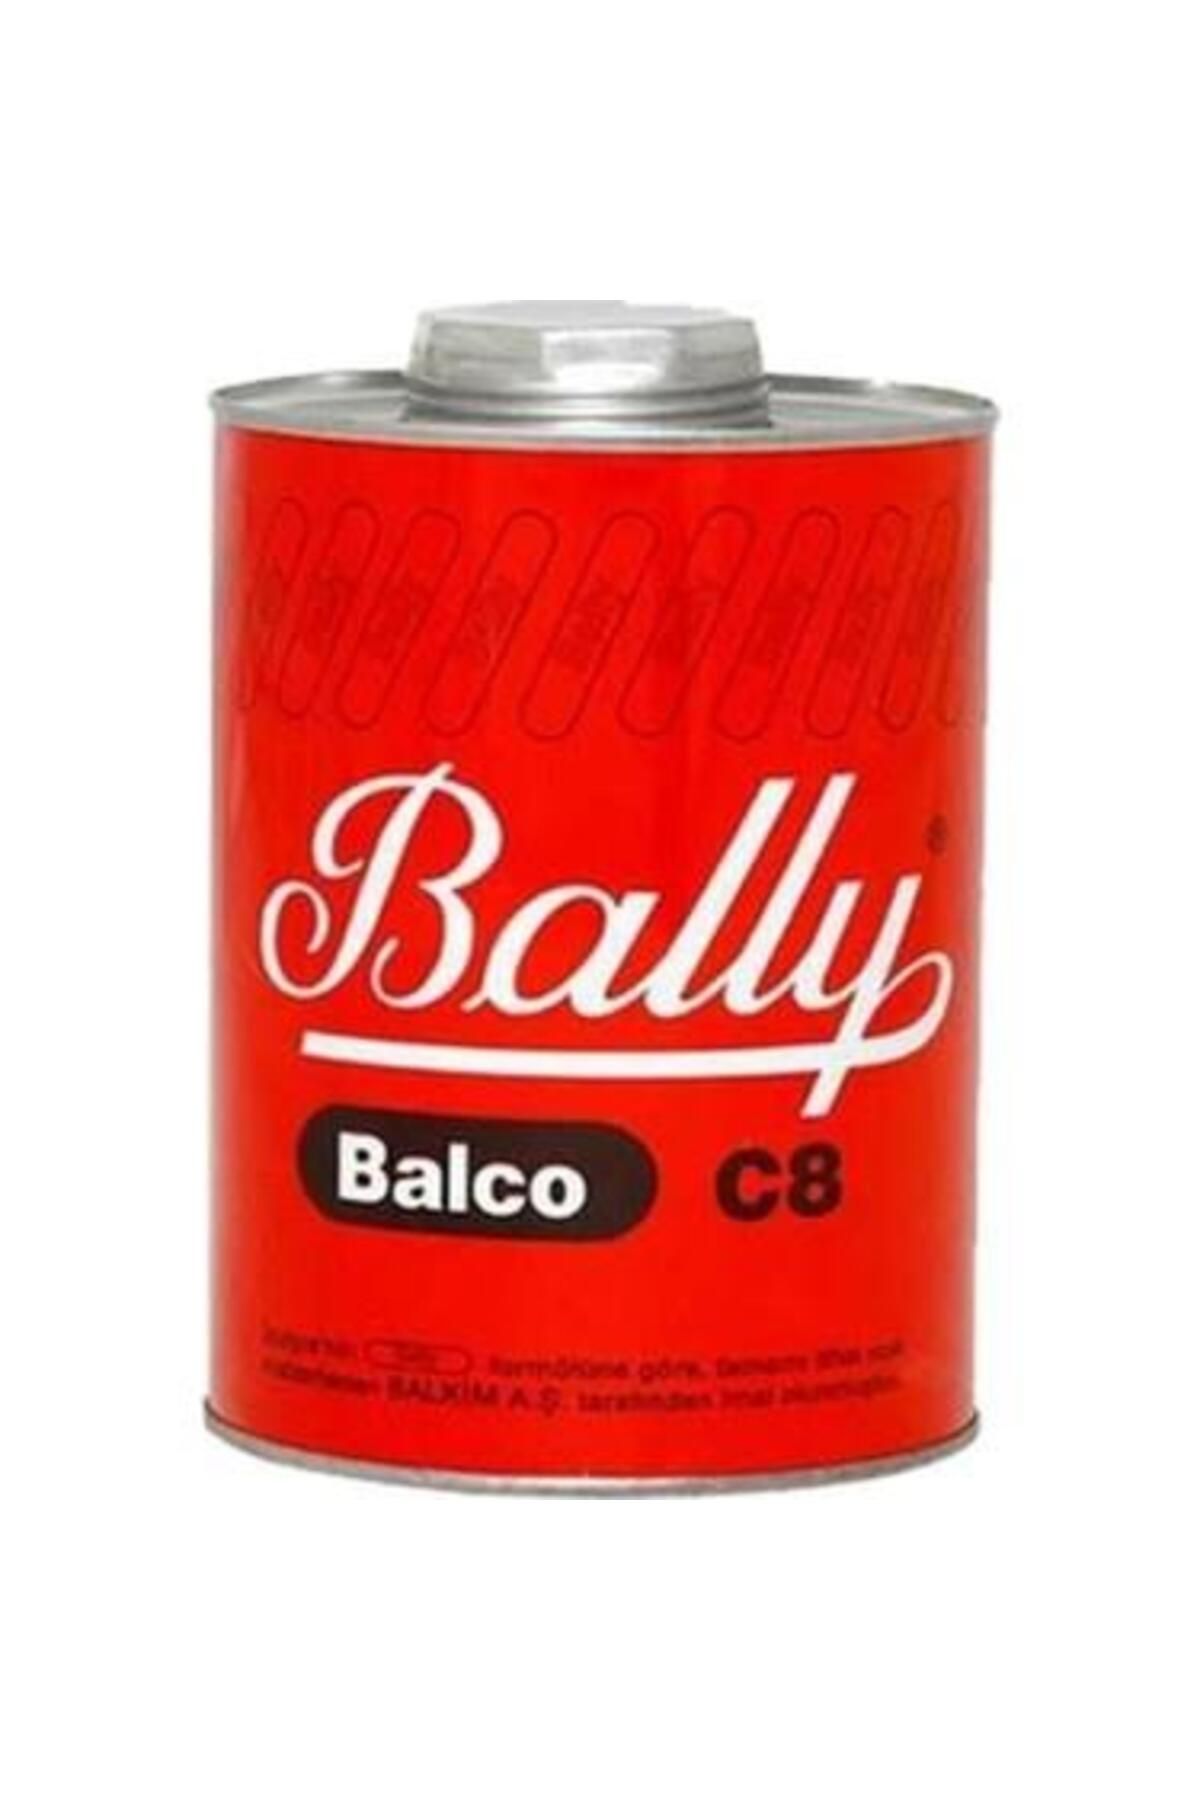 Bally C8 Yapıştırıcı 250 Gr